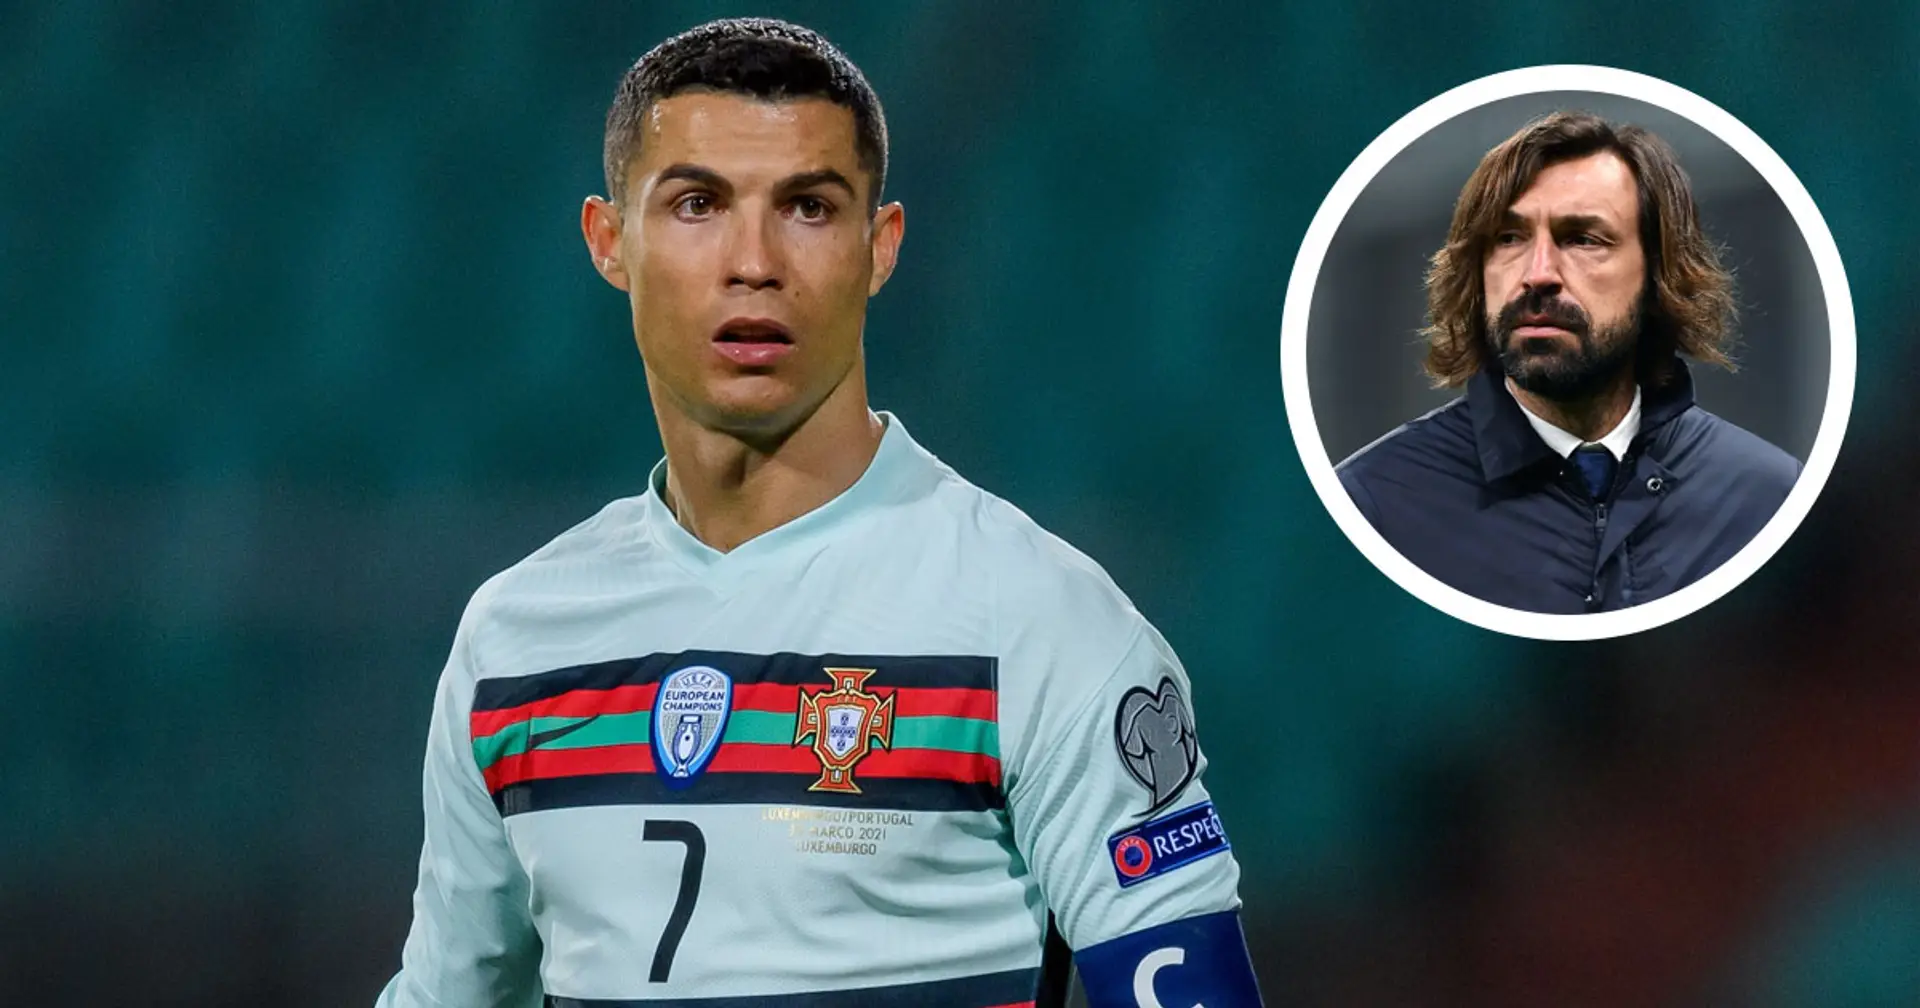 "Doveva giocare meno con il Portogallo": Pirlo racconta un retroscena che lo stesso CR7 gli ha rivelato